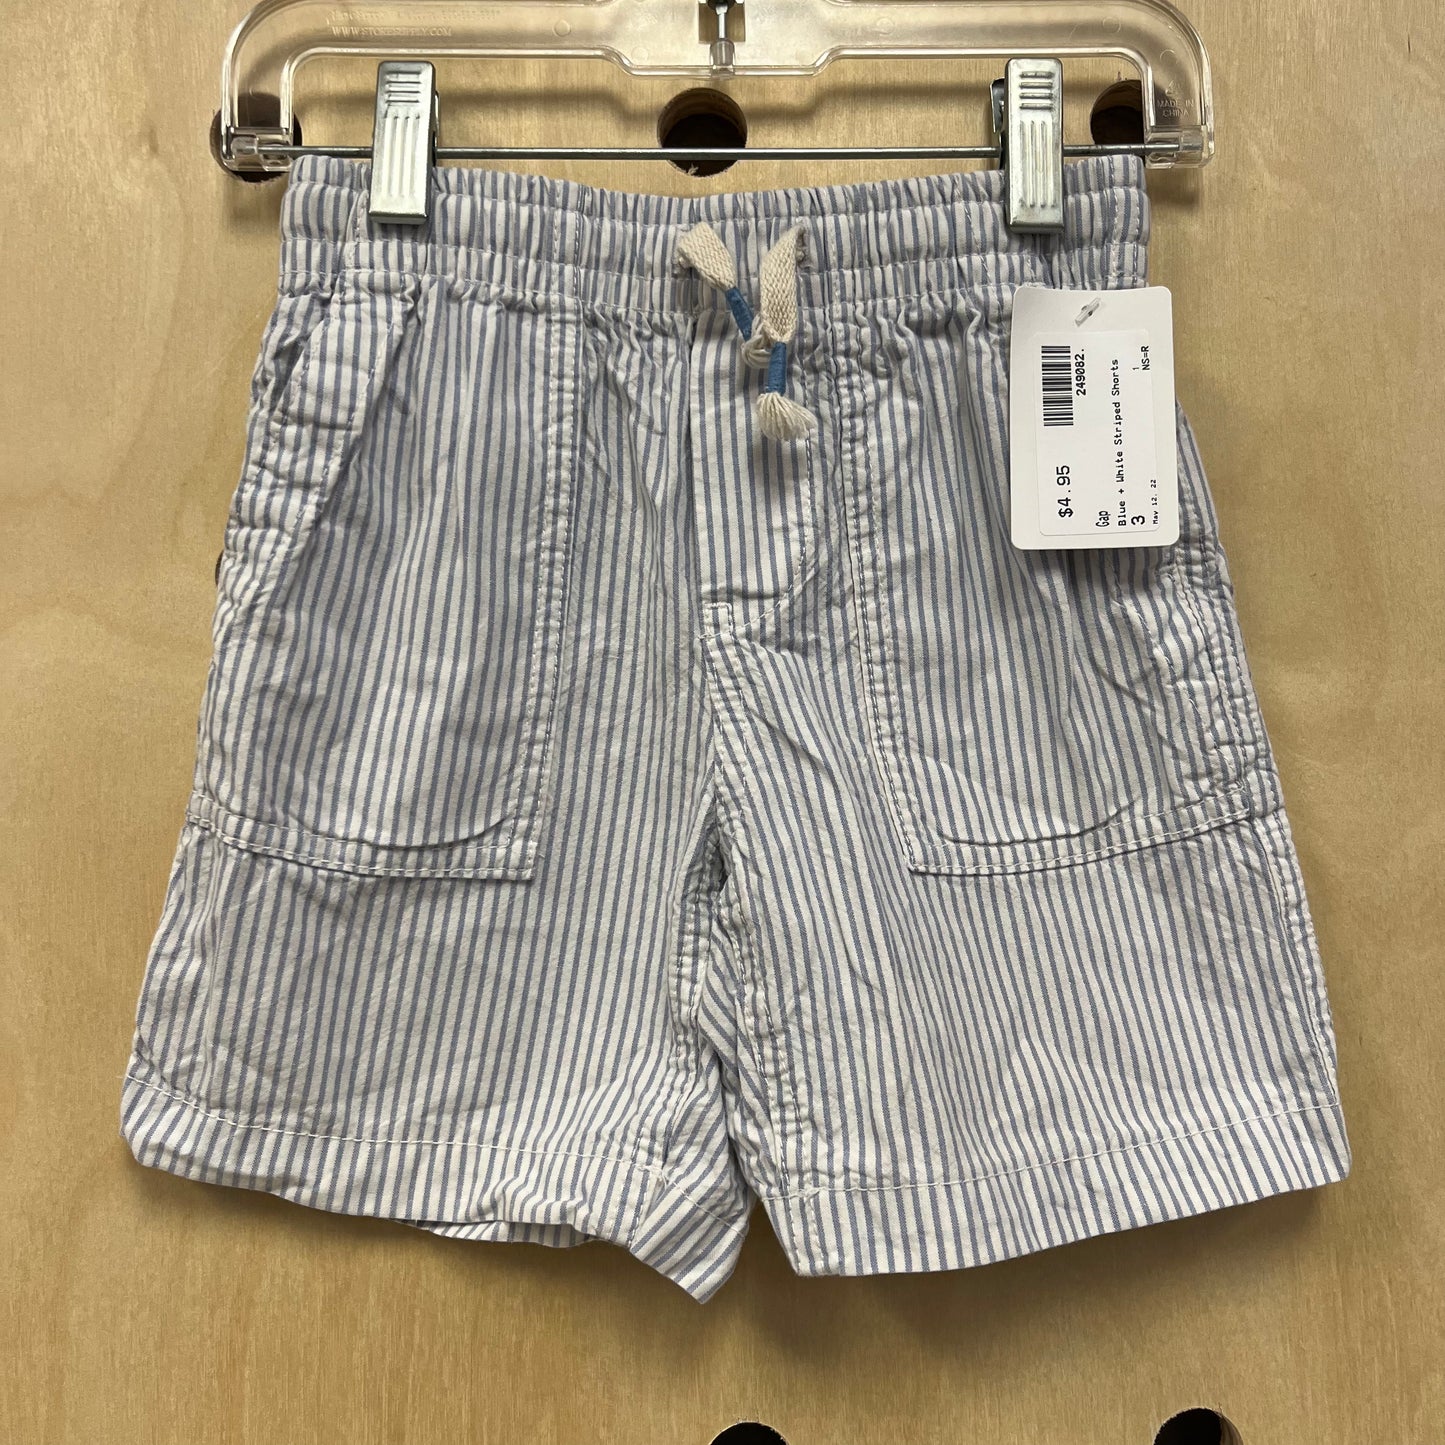 Blue + White Striped Shorts